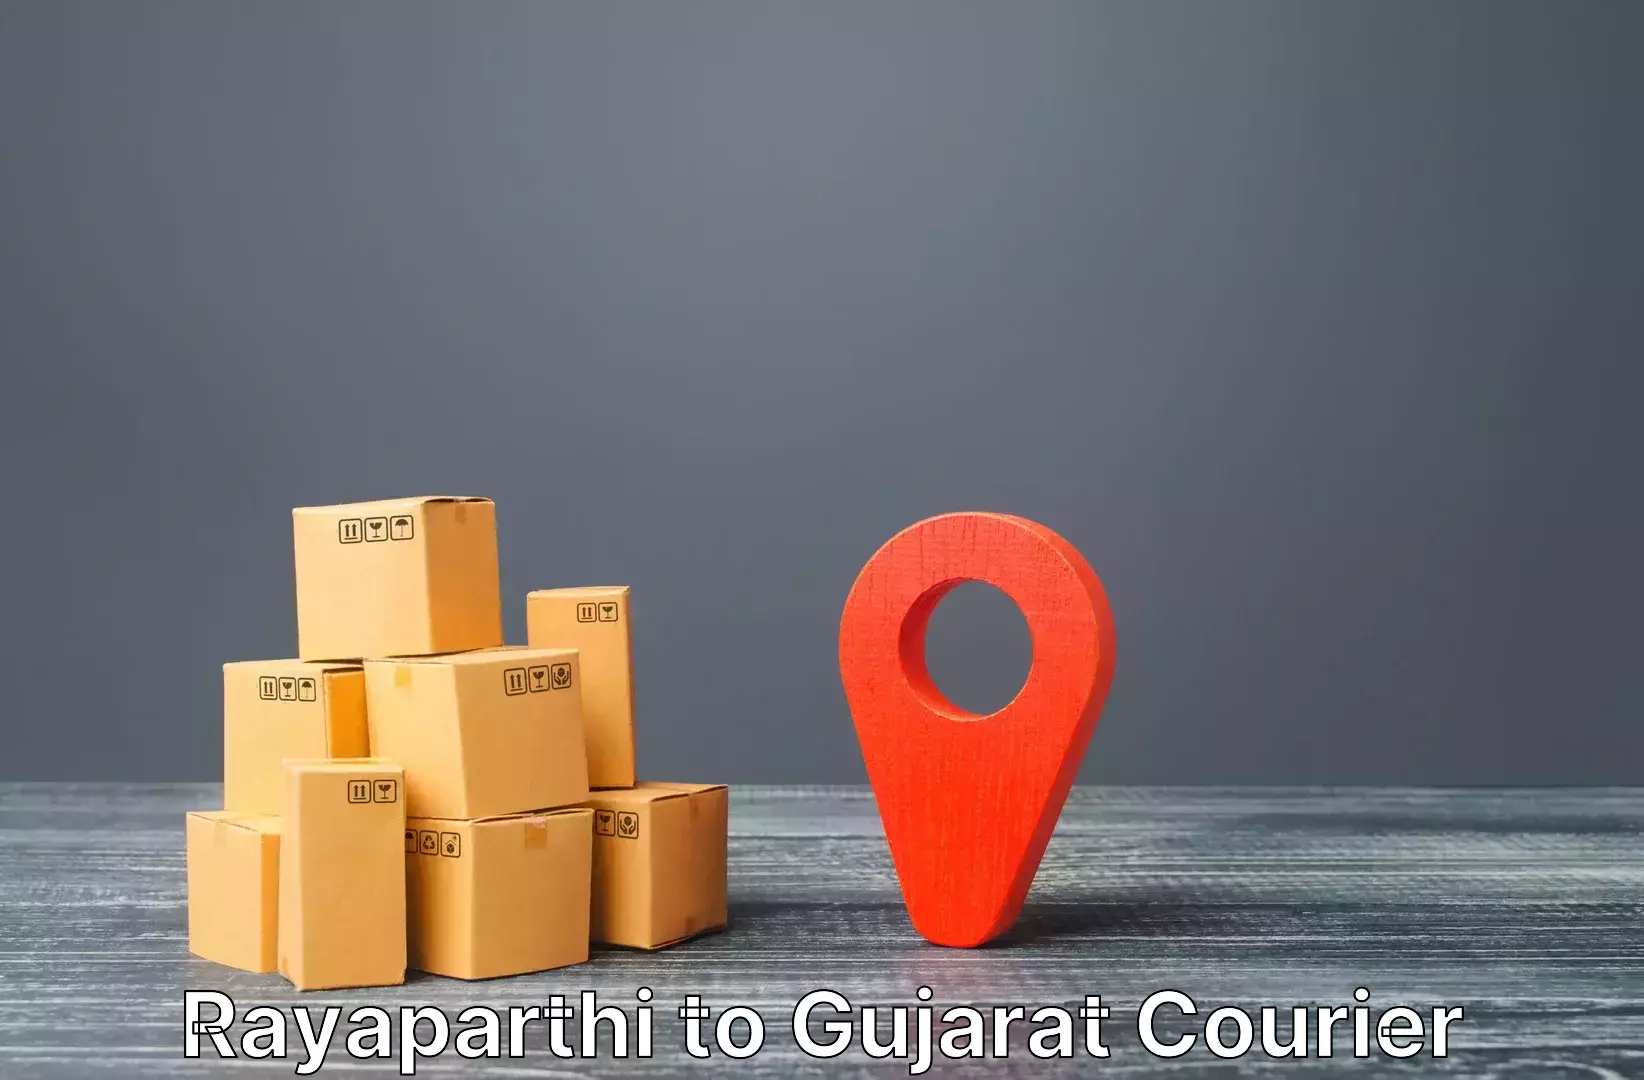 Single item baggage courier Rayaparthi to Gujarat